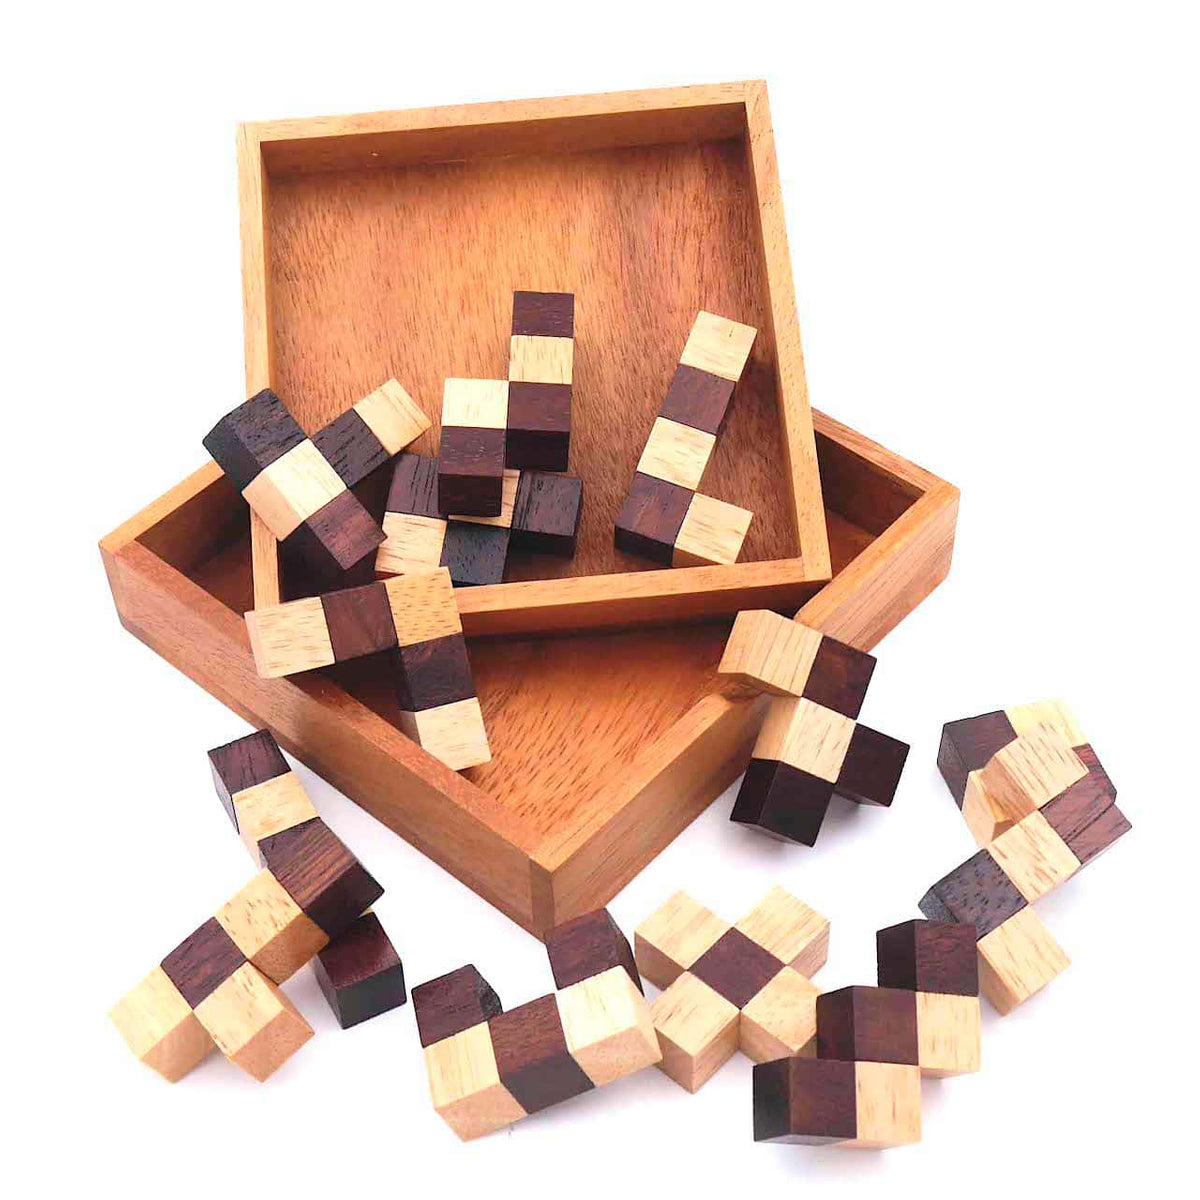 schachbrett-woodenpuzzle-knobelspiel